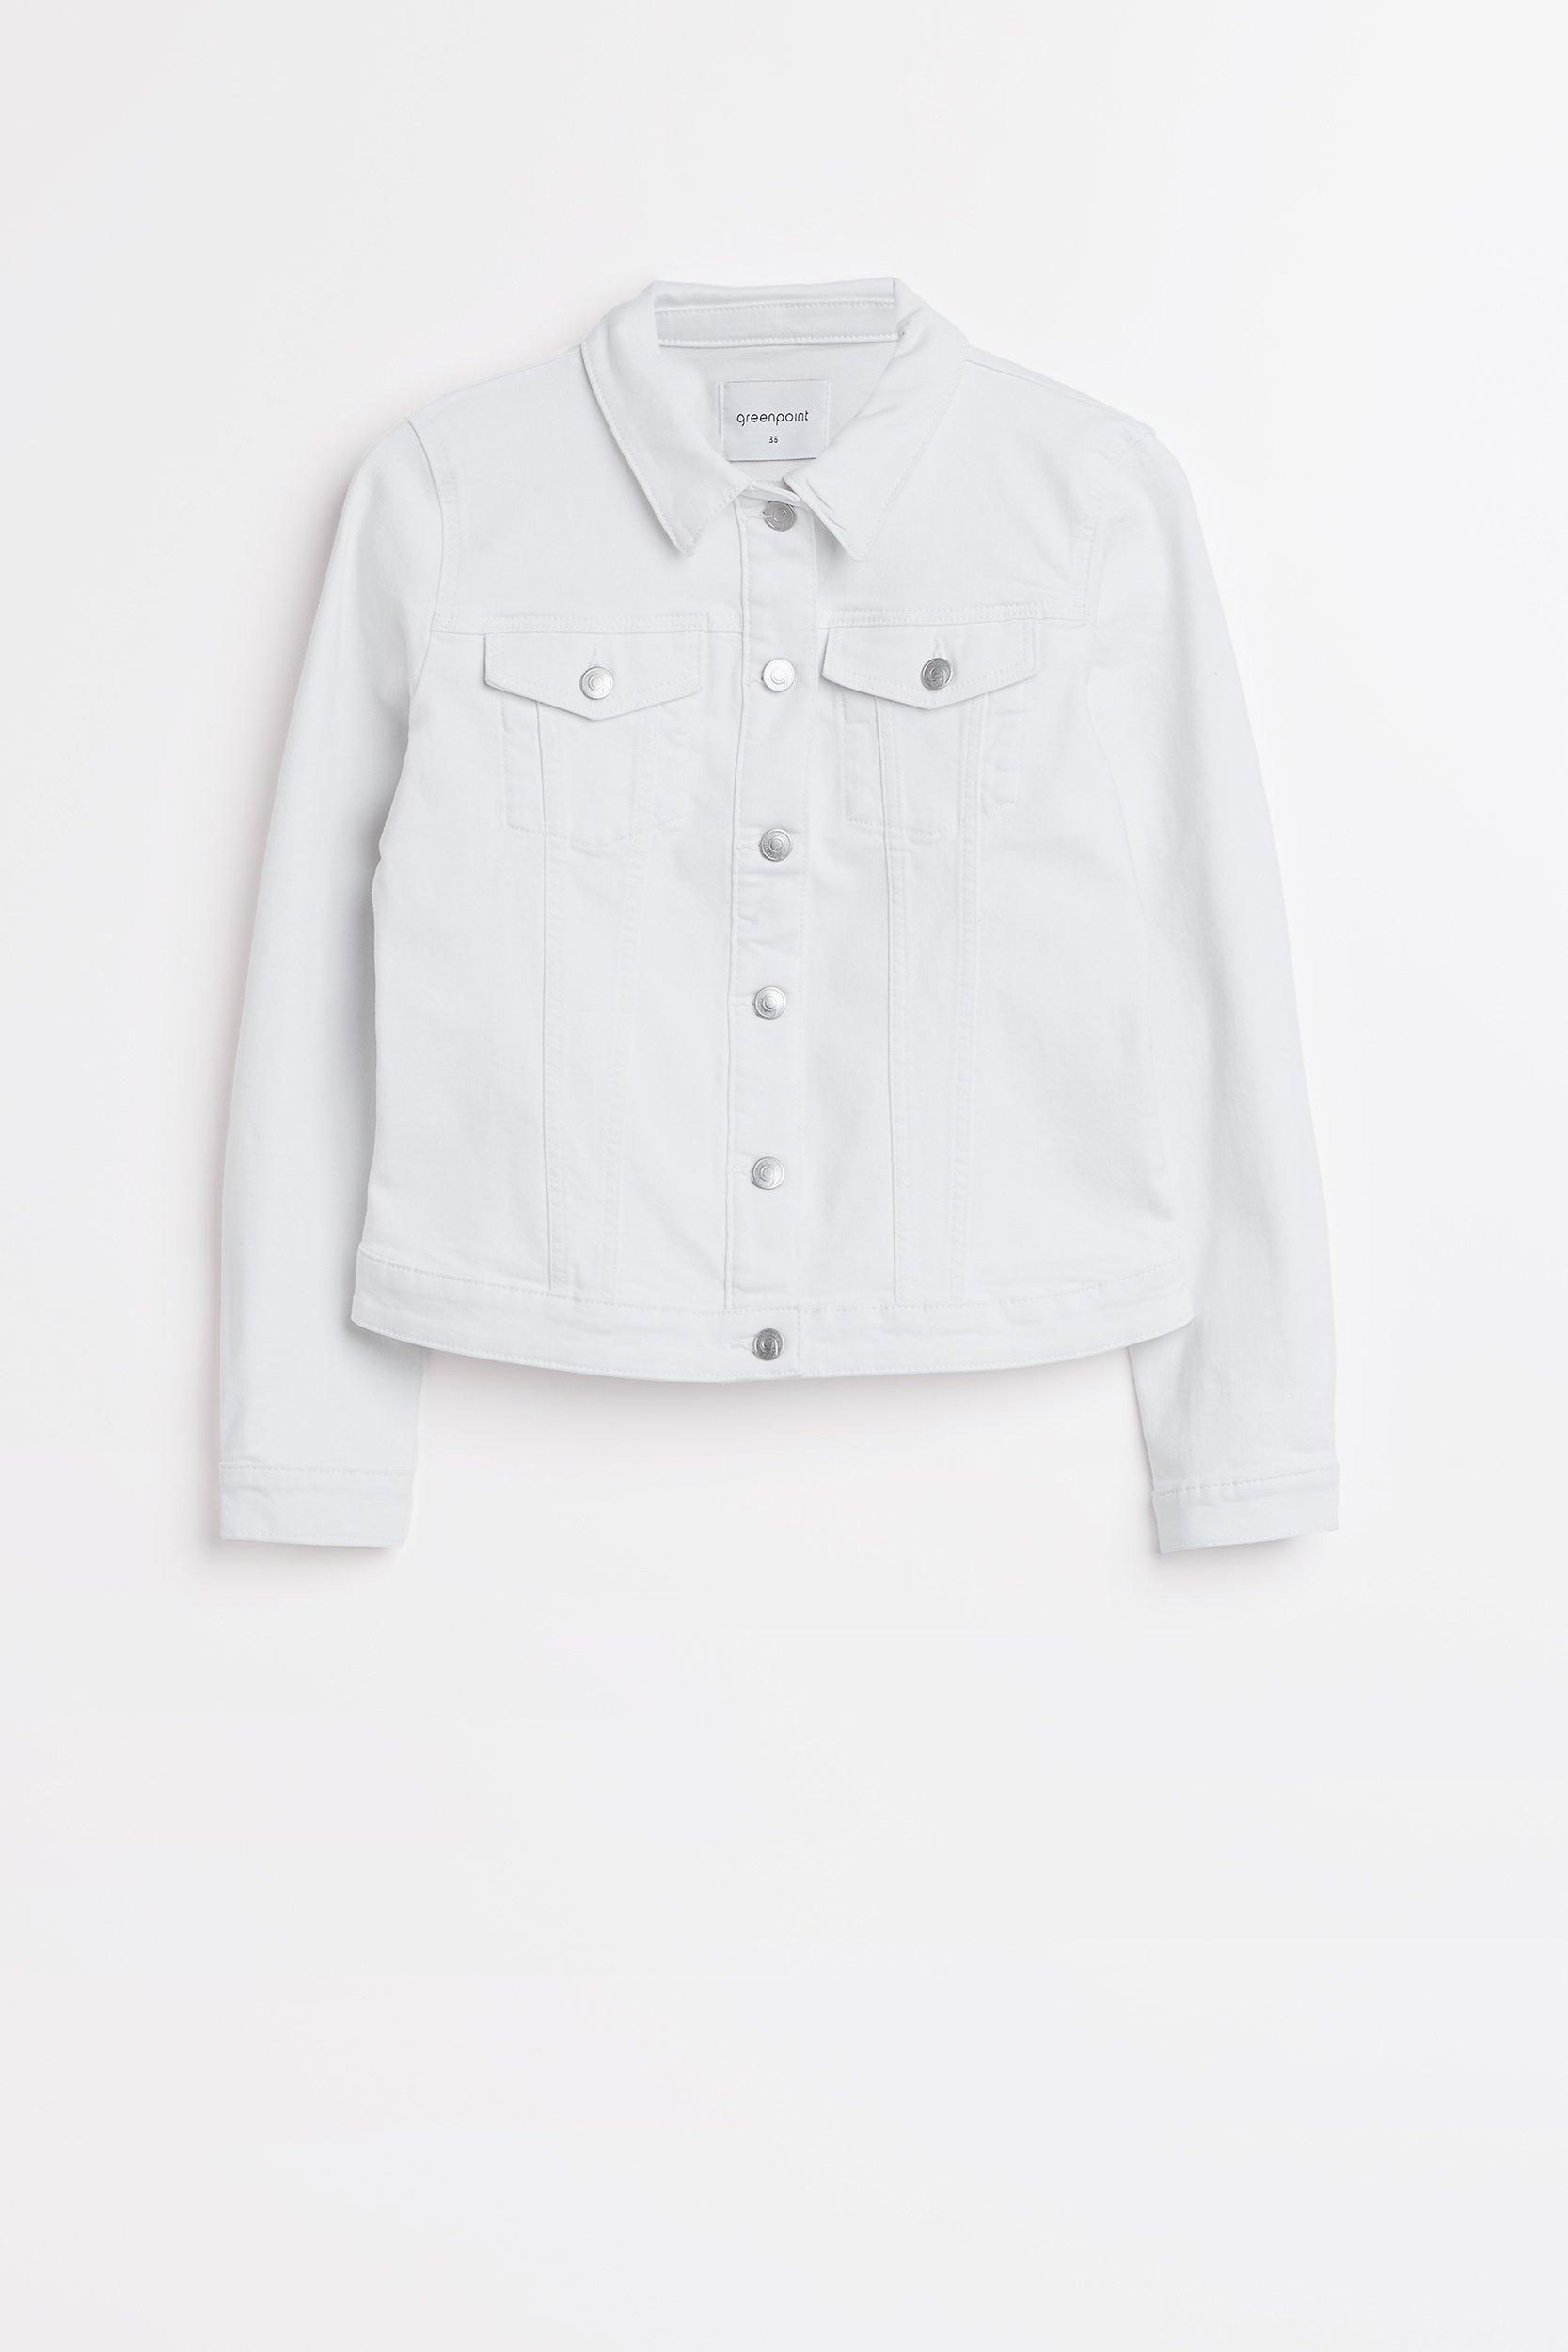 Jeansowa kurtka w białym kolorze